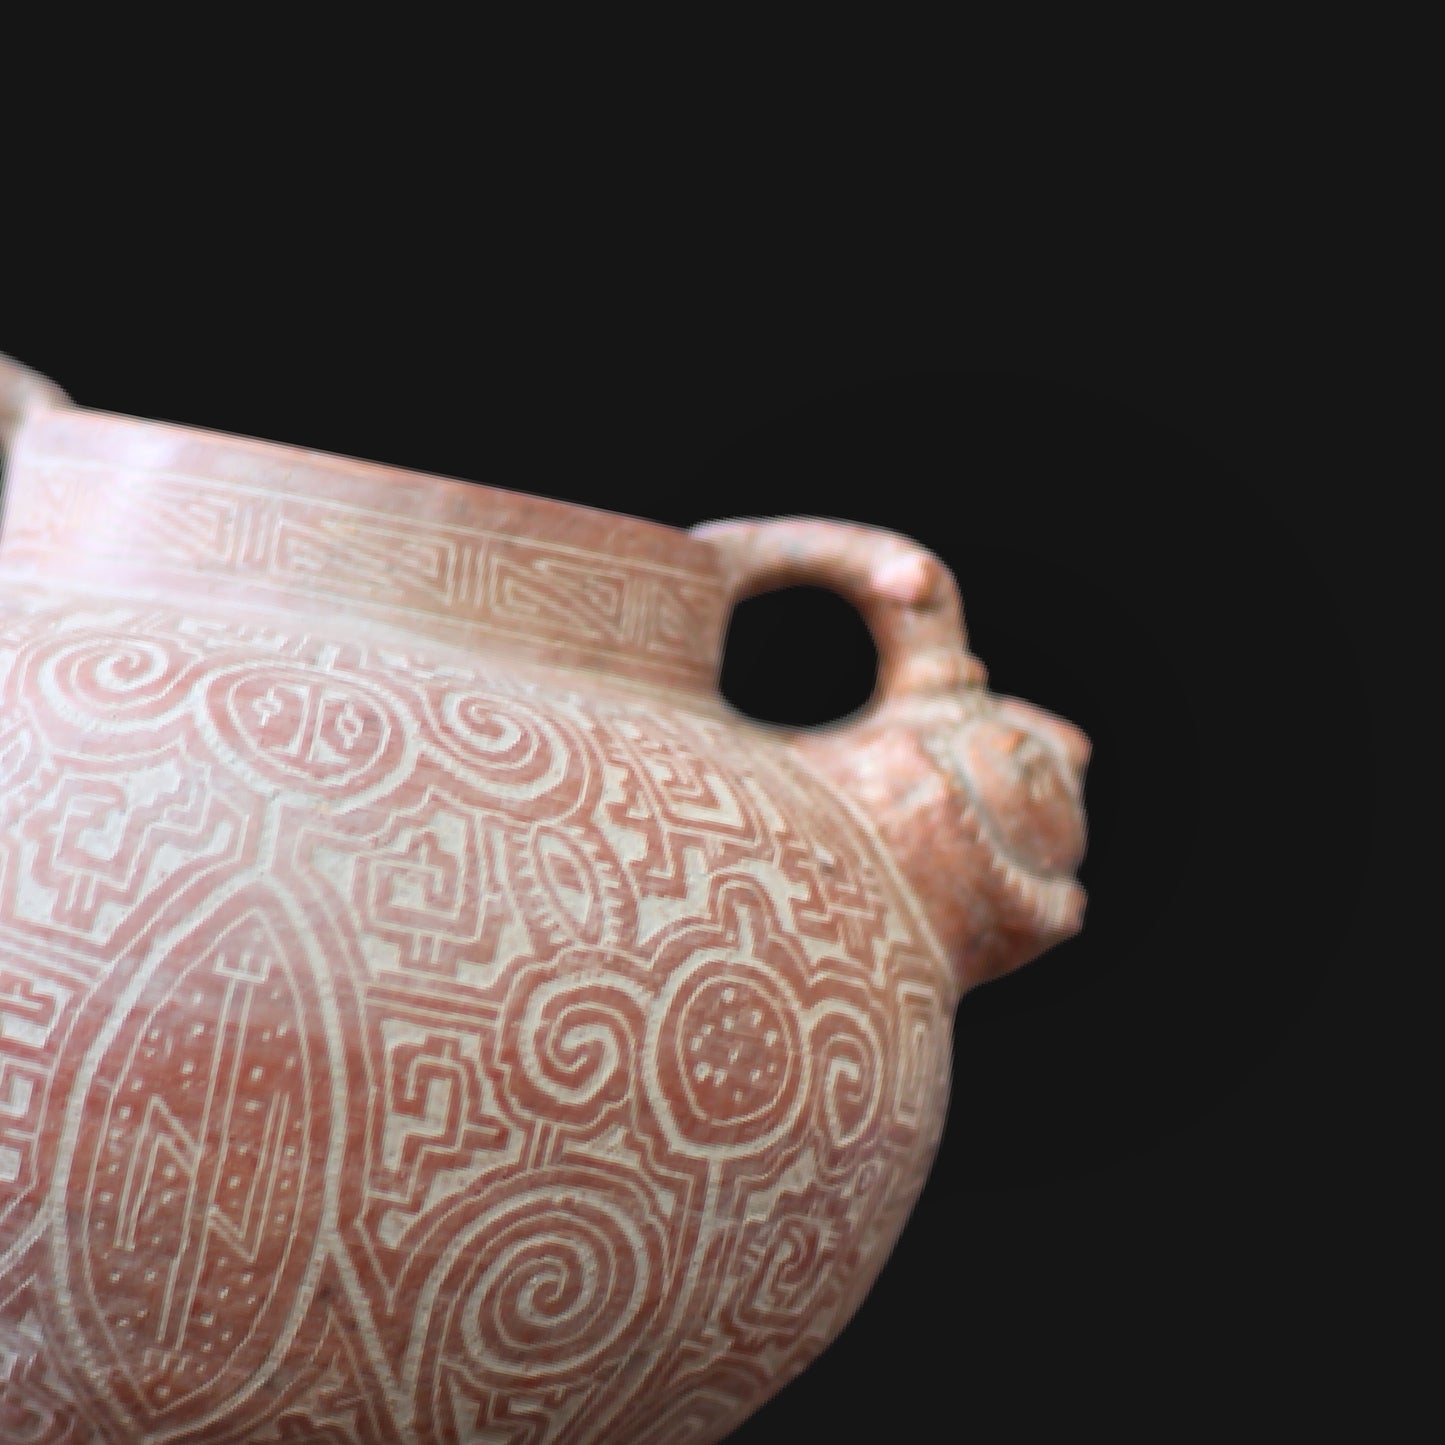 Igaçaba Amazônica: Cerâmica de Estilo Marajoara (peças arqueológicas recriadas por artesão)